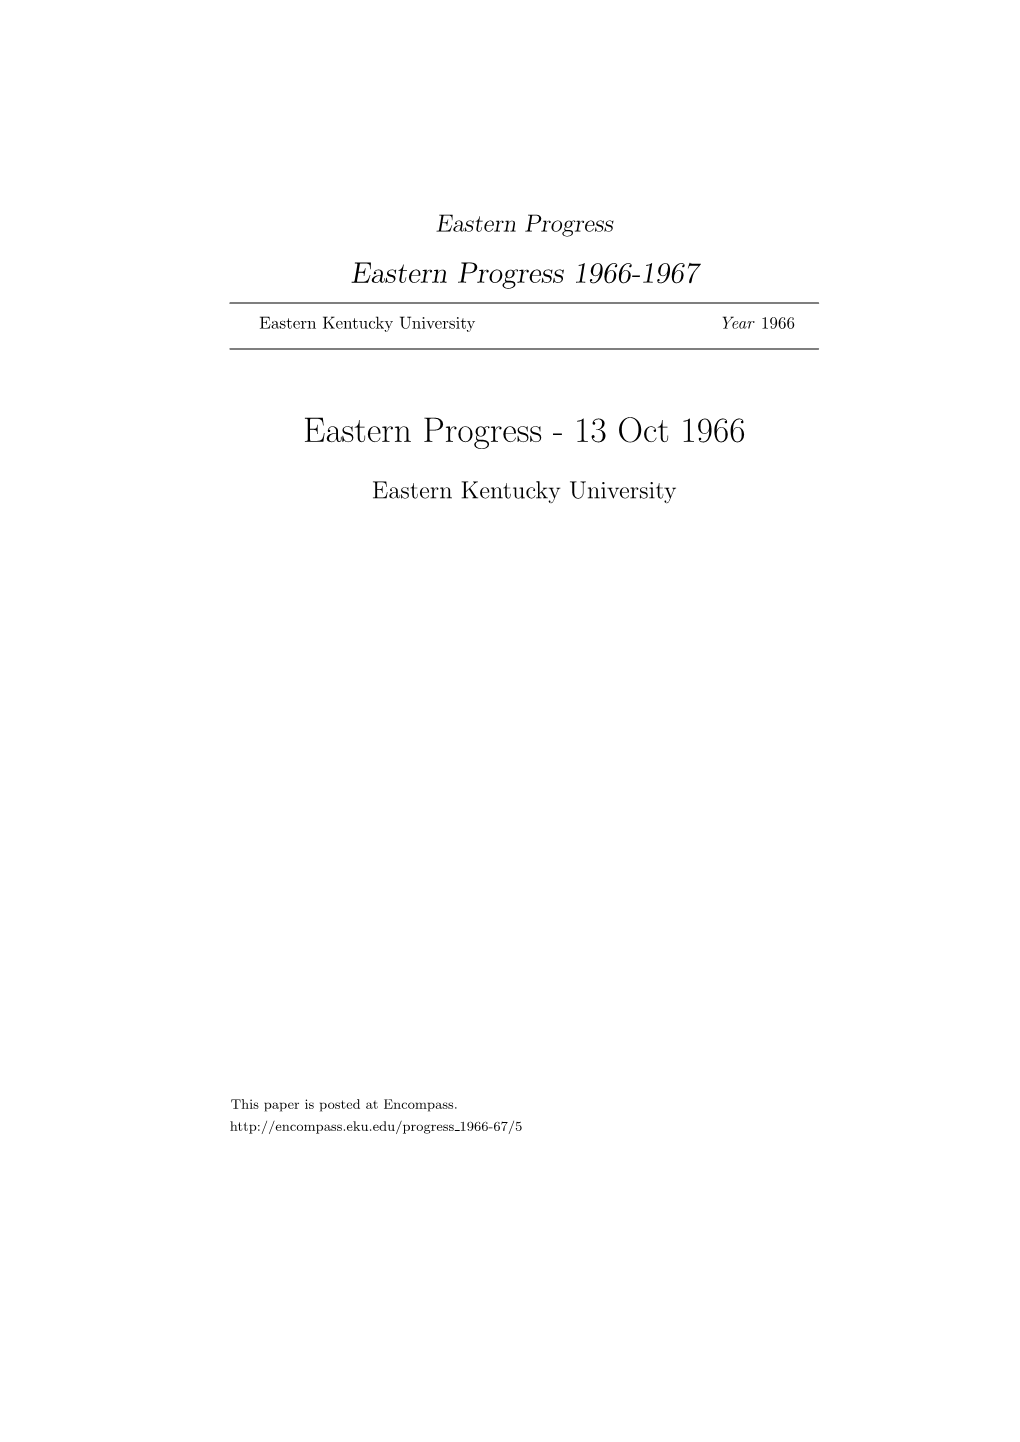 Eastern Progress Eastern Progress 1966-1967